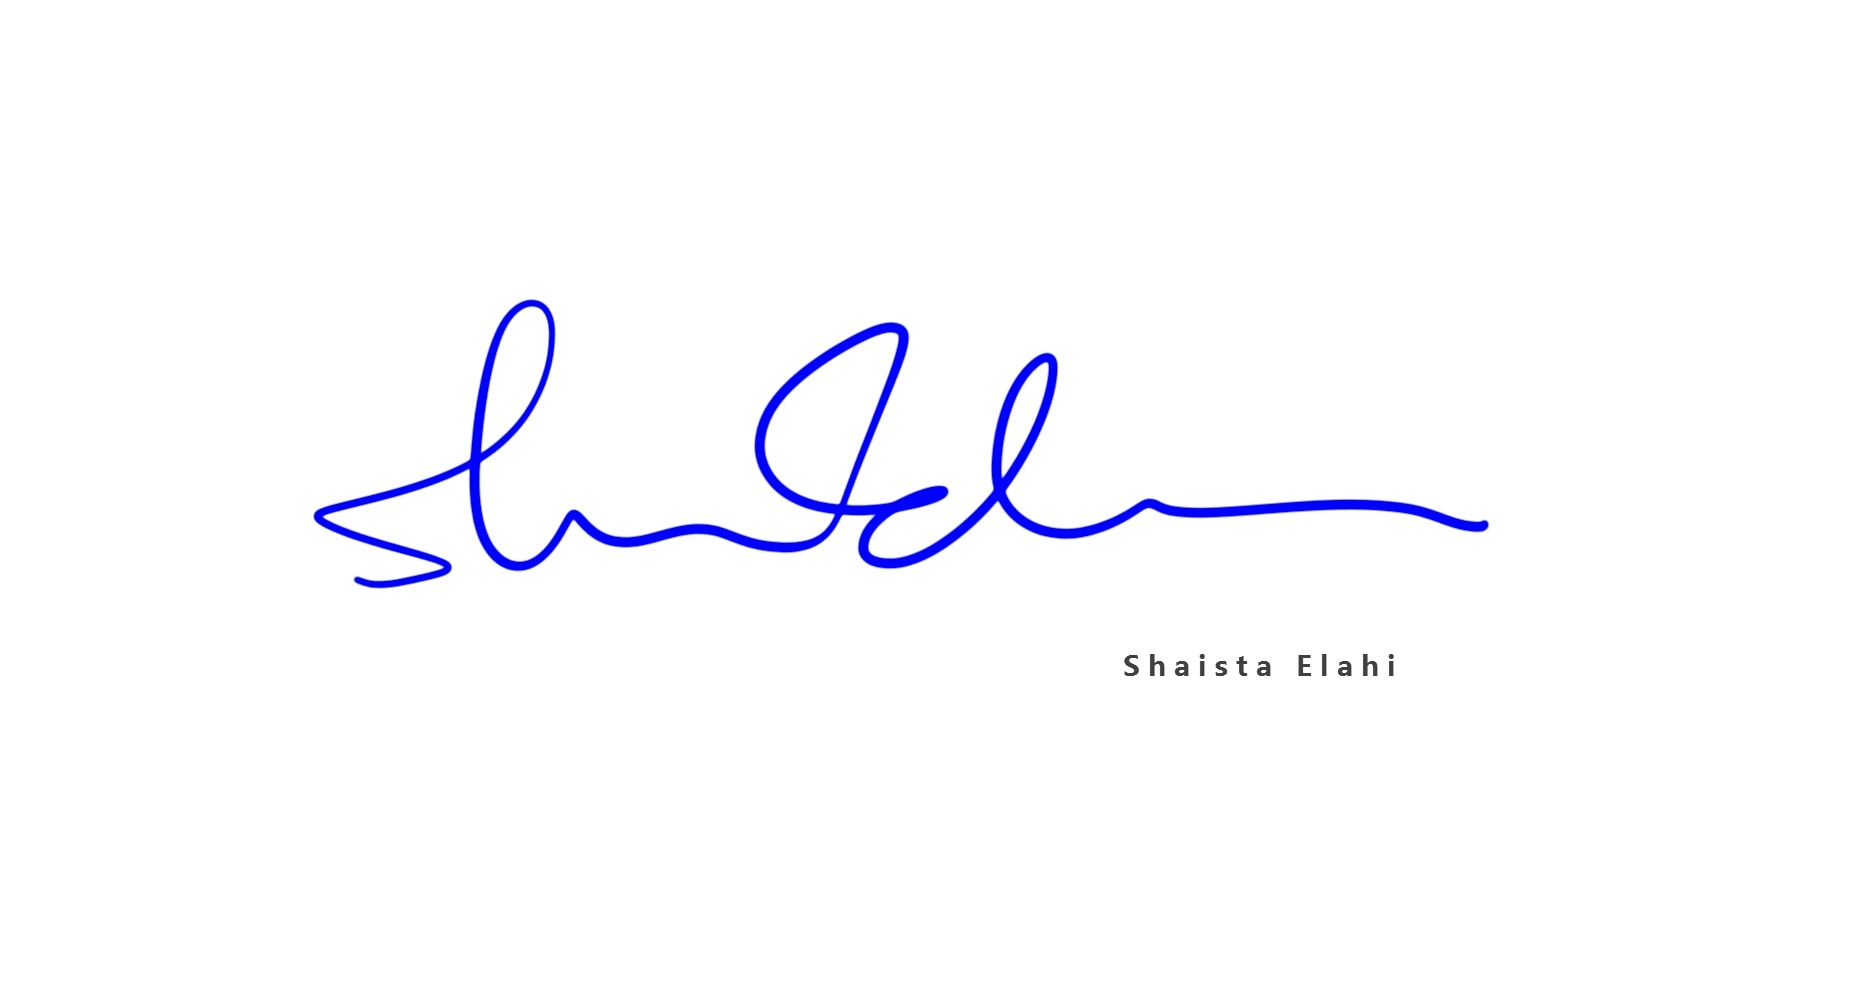 英文签名设计案例丨shaista elahi近百种签名设计方案